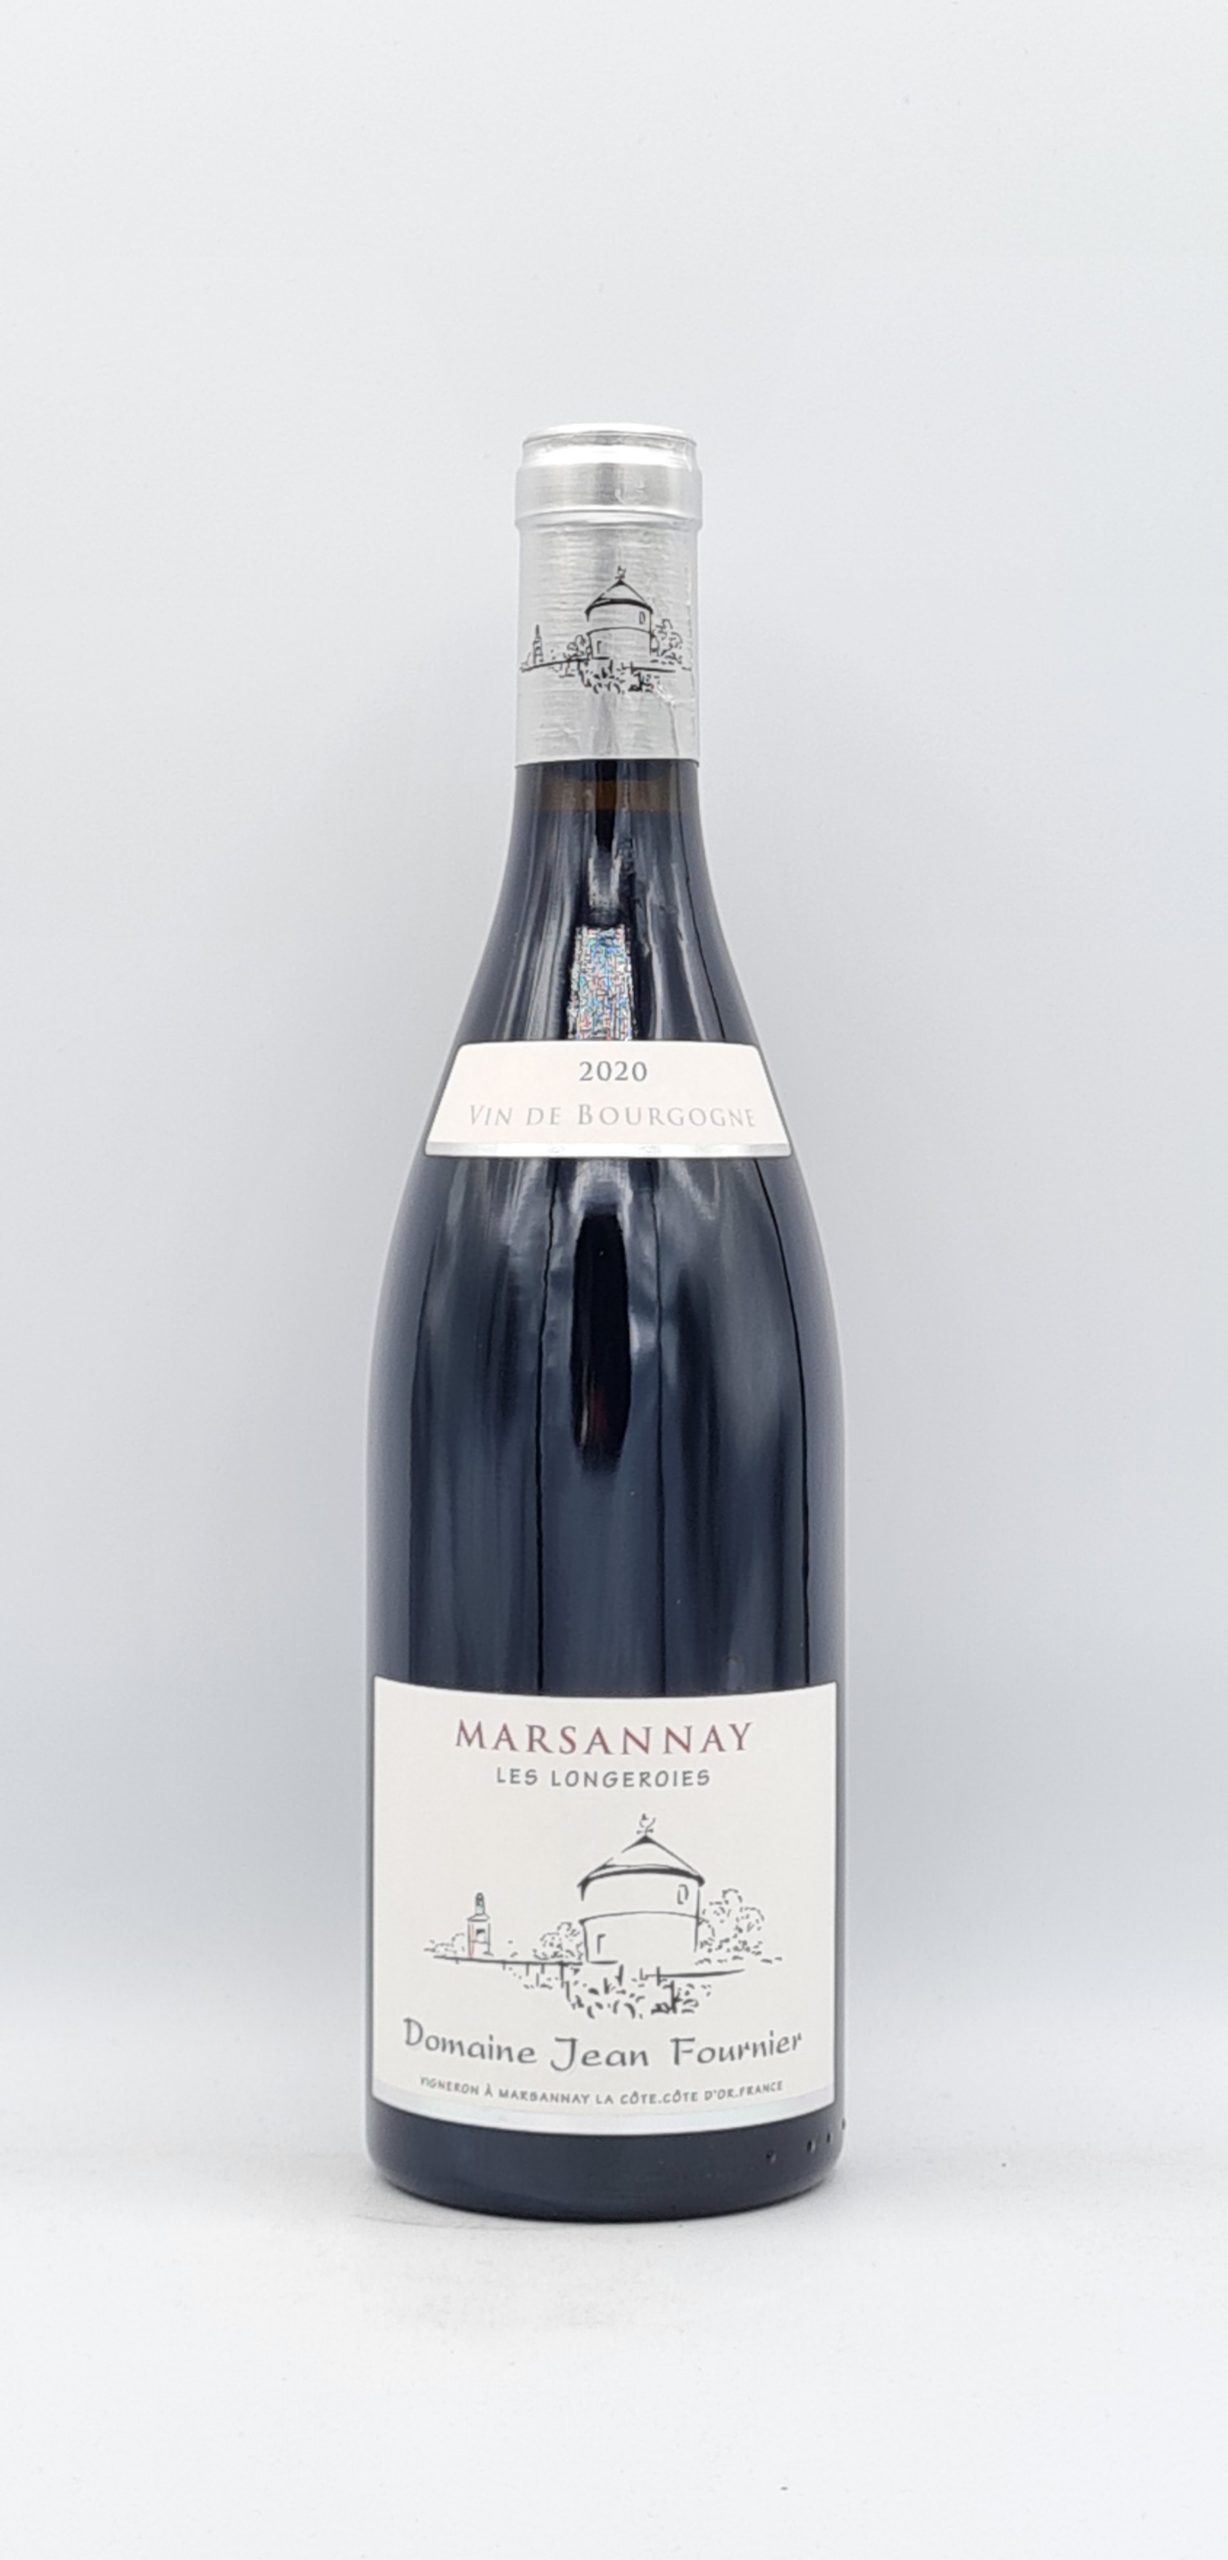 Bourgogne Marsannay “Les Longeroies” 2020 Domaine J Fournier